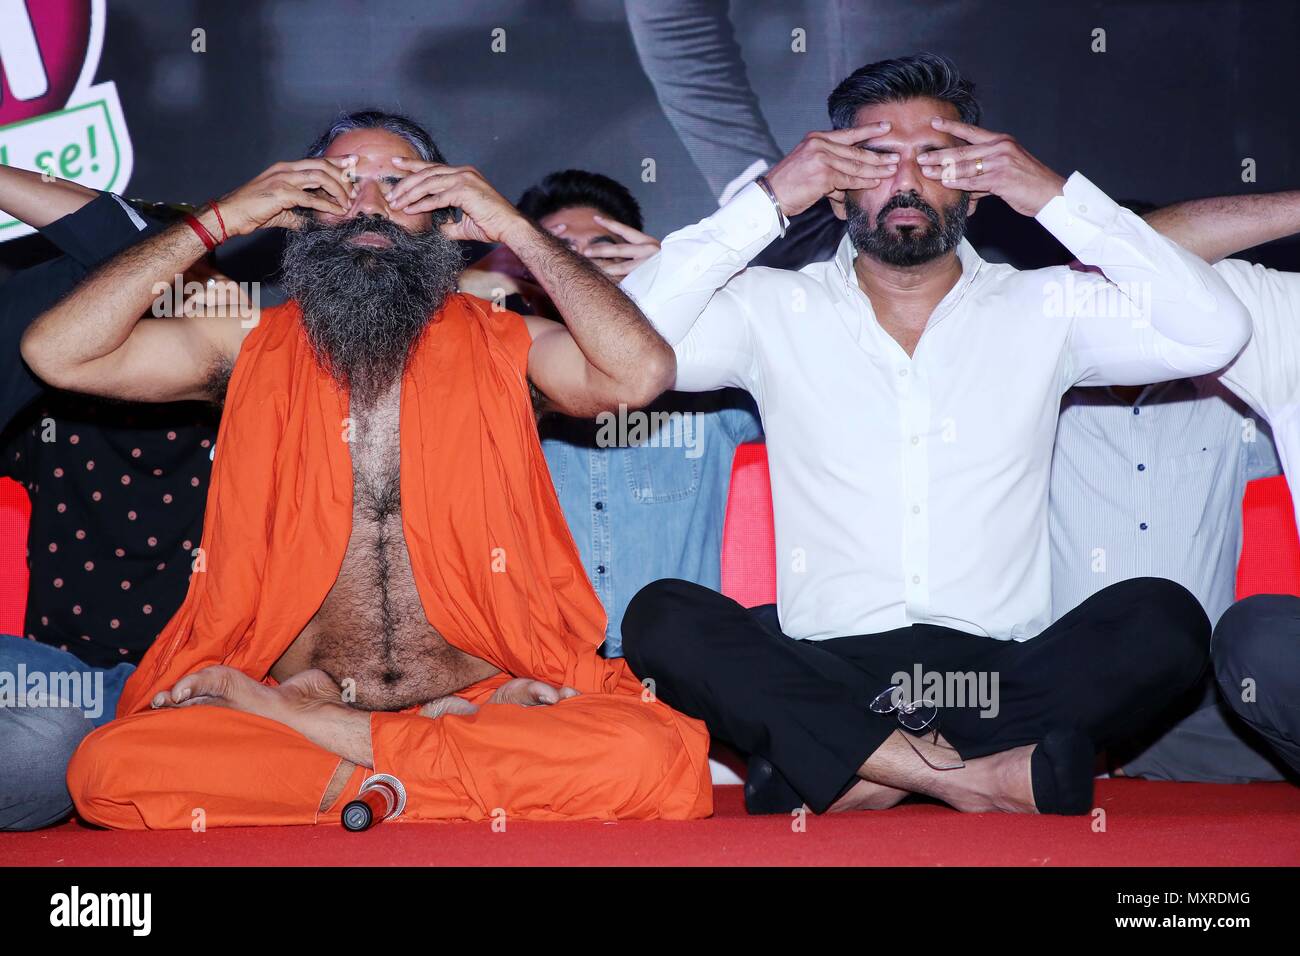 New Delhi, Inde. 04 Juin, 2018. Guru Yoga Baba Ramdev yoga ainsi qu'au cours de l'annonce de la Mission 120 jours monter l'Inde. Credit : Jyoti Kapoor/Pacific Press/Alamy Live News Banque D'Images